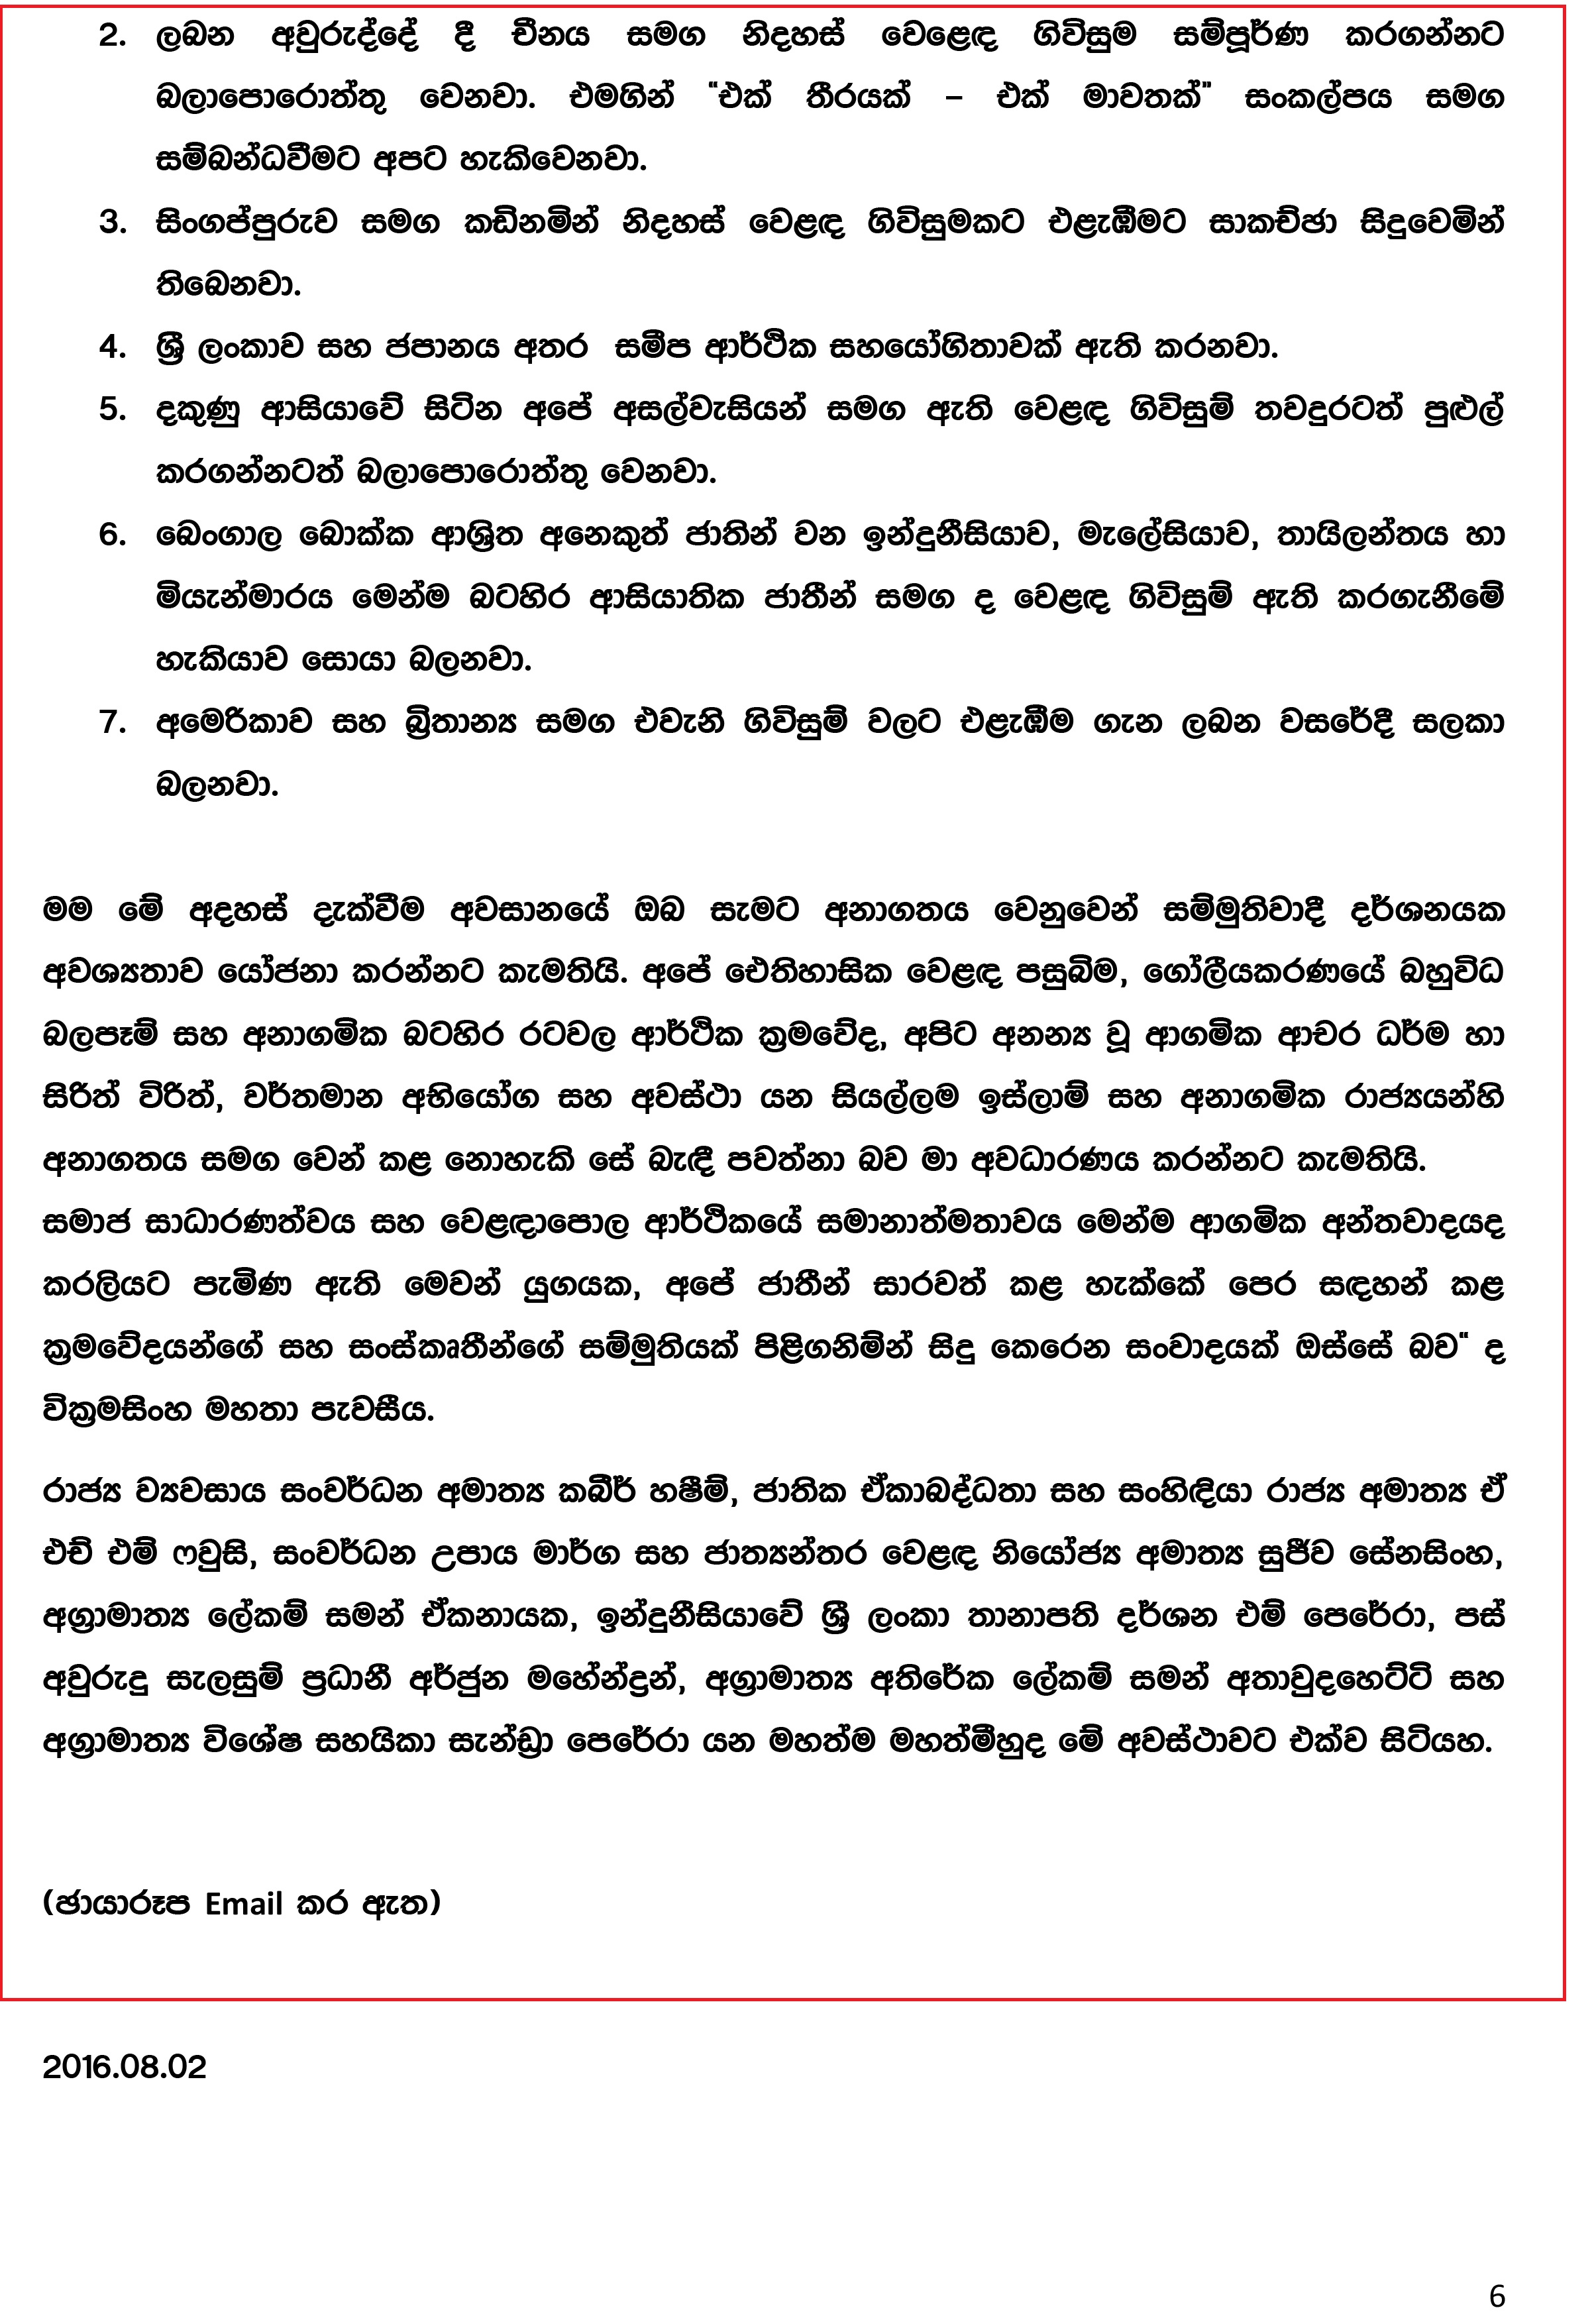 Press Release (1) - August 02_2016 (Sinhala)-6